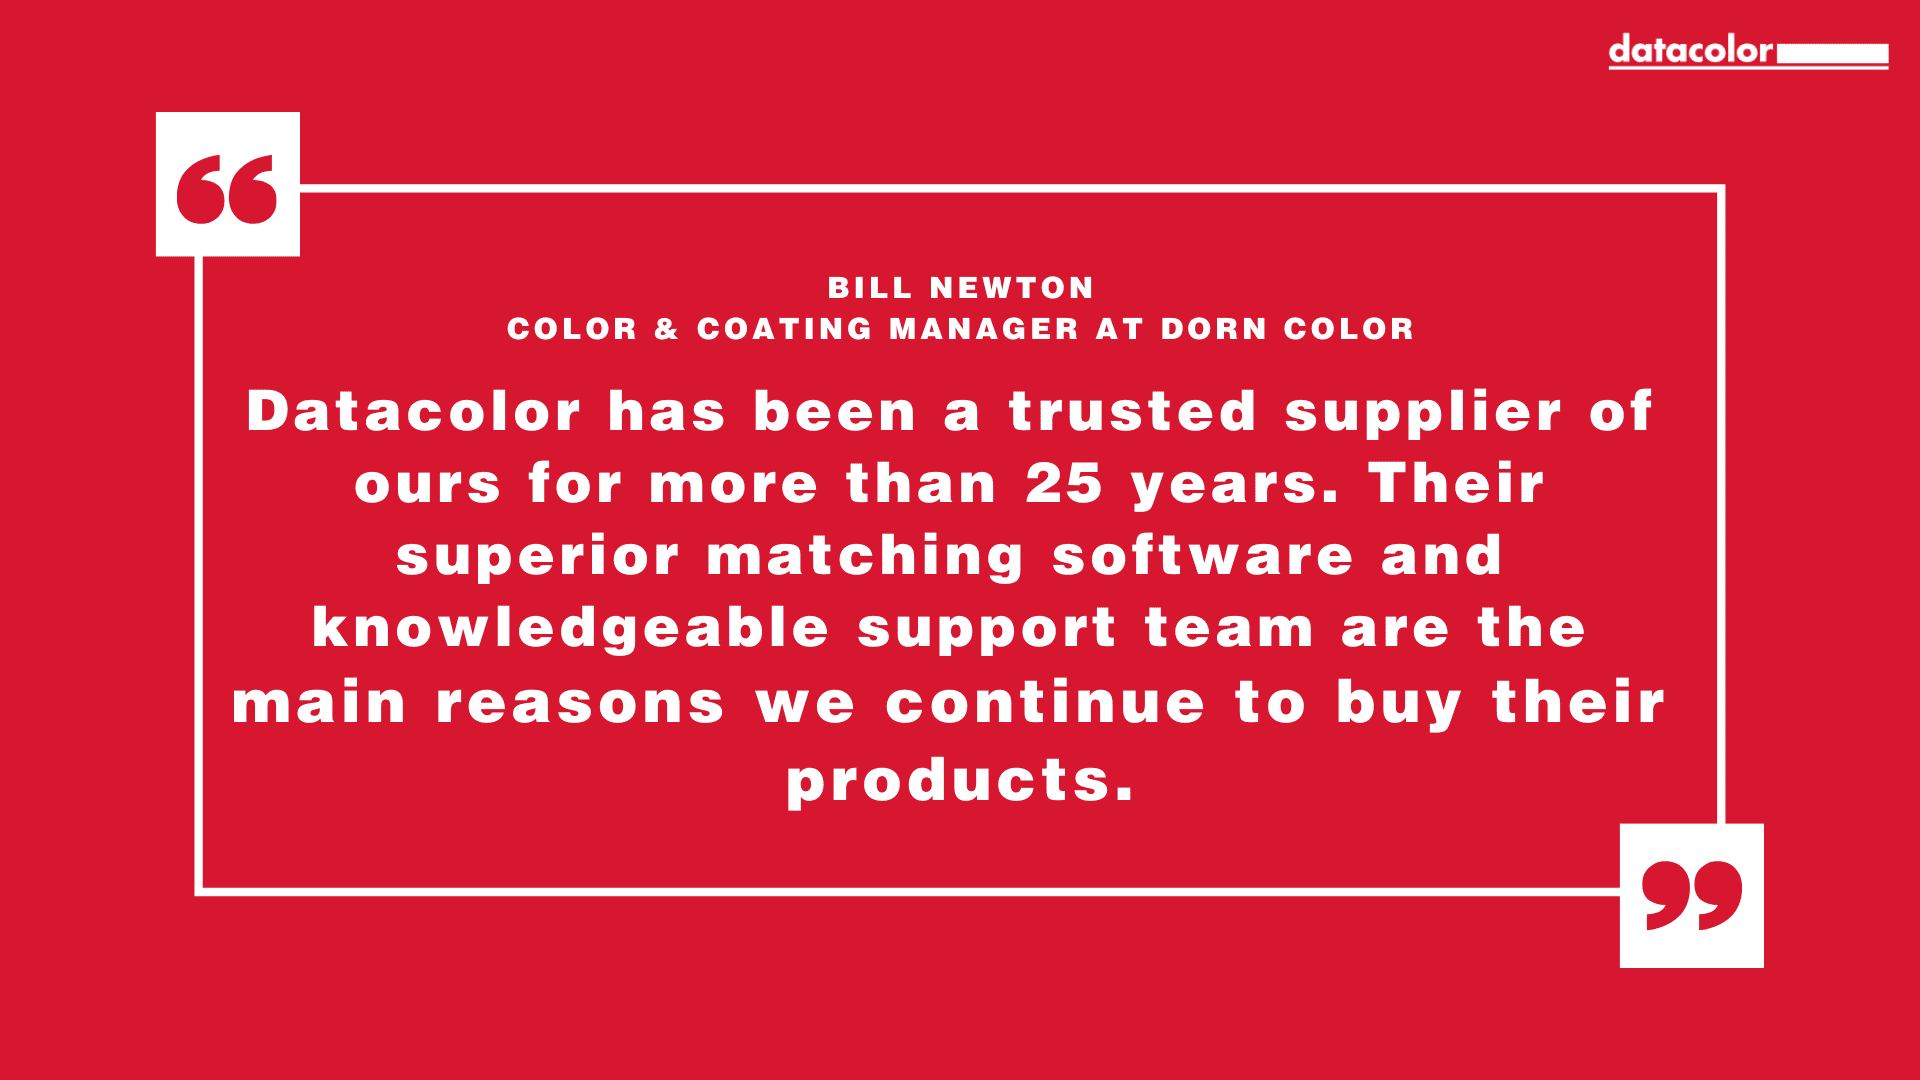 引用 Dorn Color 的颜色和涂料经理 Bill Newton 的话